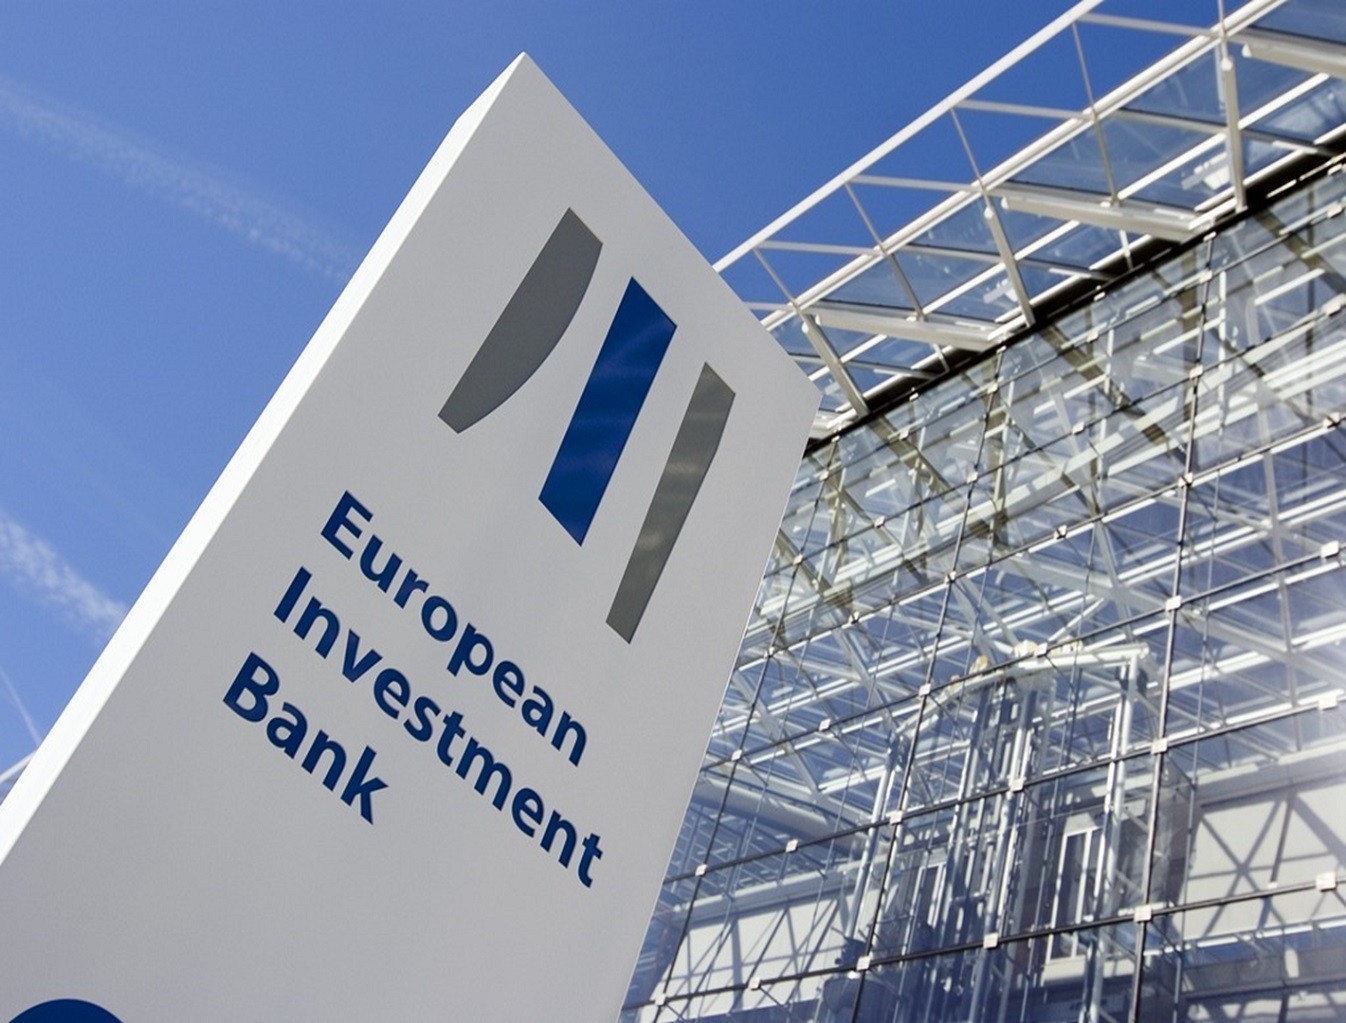 Νέα χρηματοδότηση 88 δισ. ευρώ από την ΕΤΕπ για έργα - Τι έχει προτεραιότητα